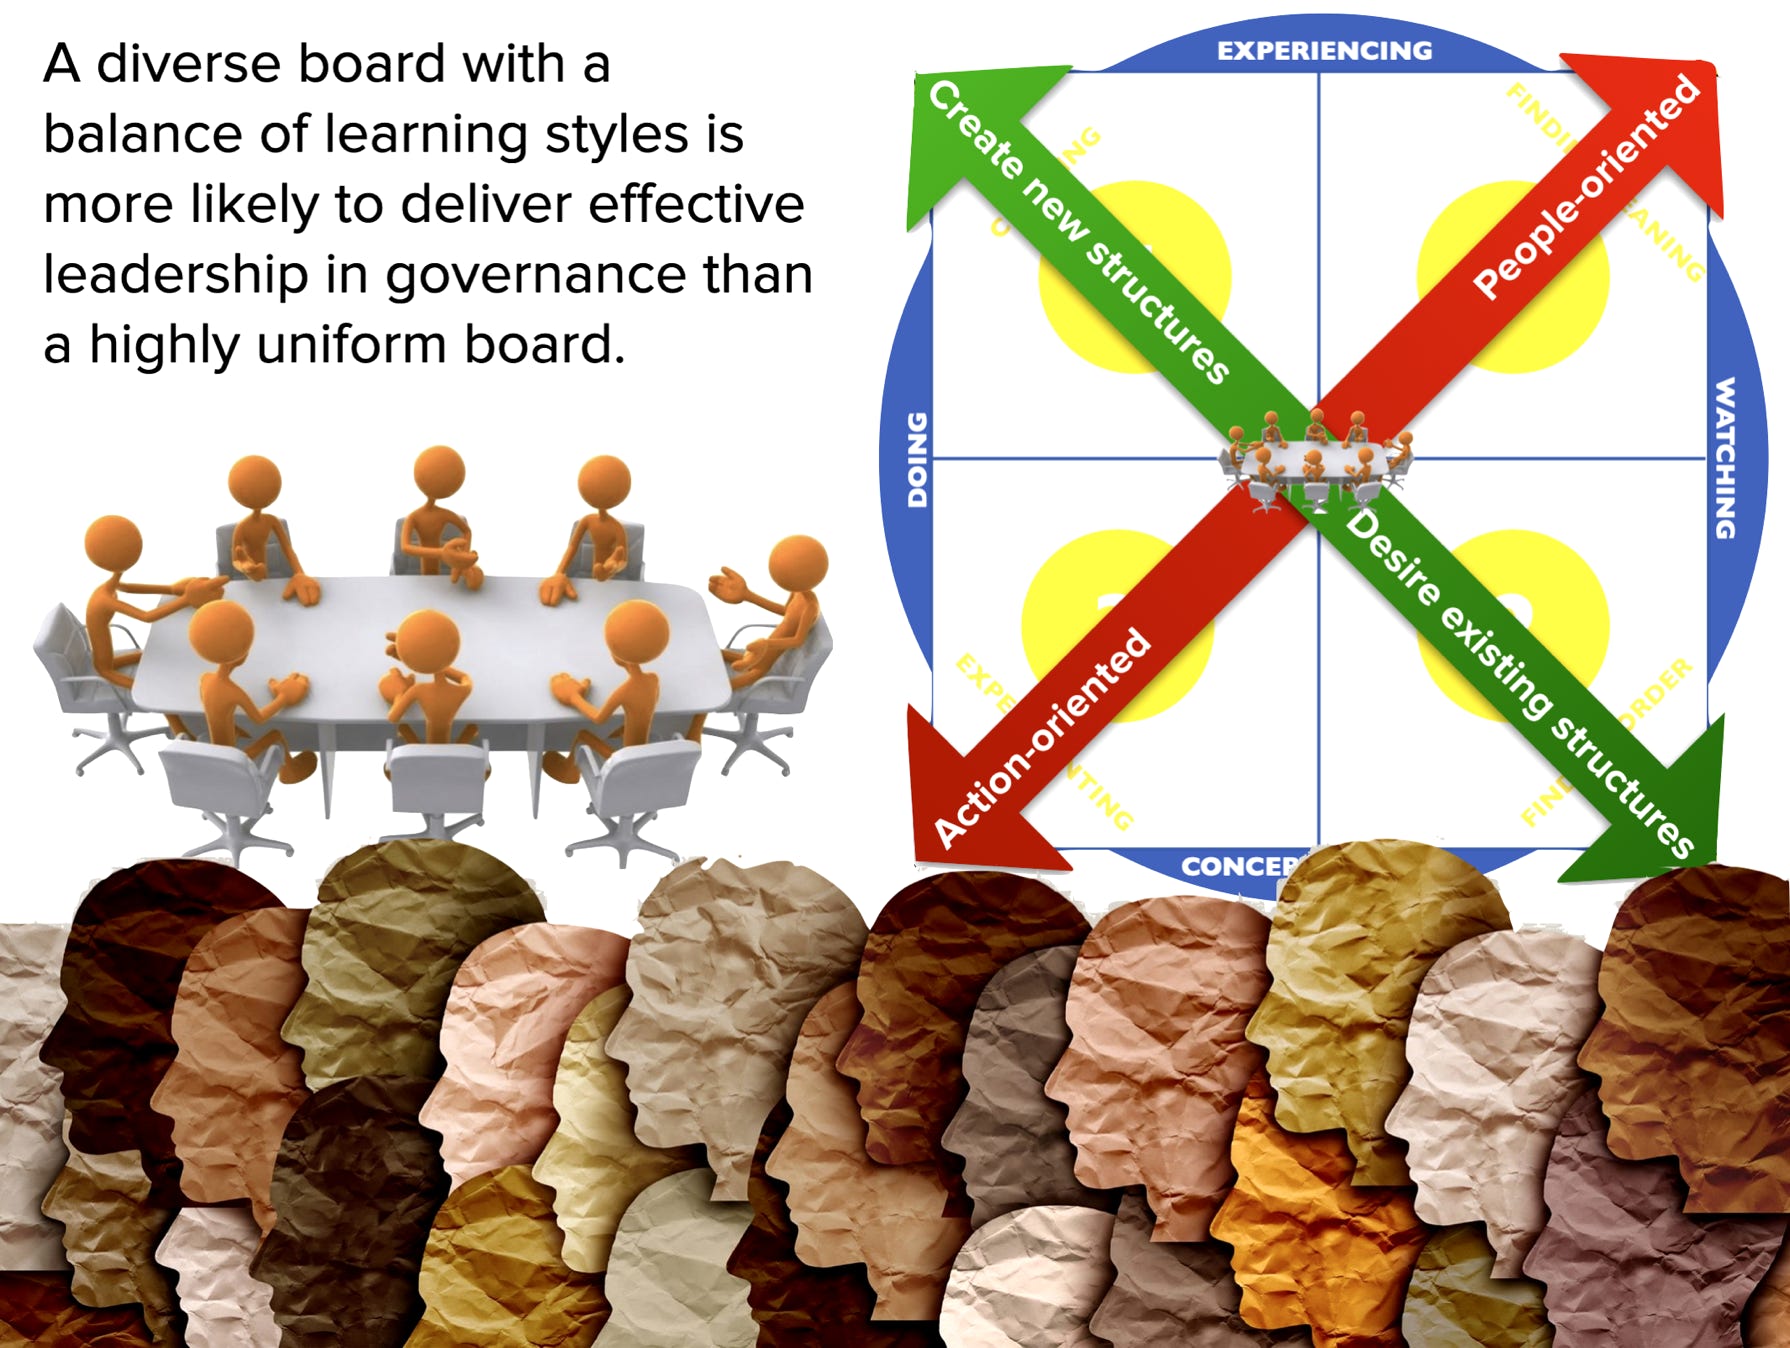 Board diversity